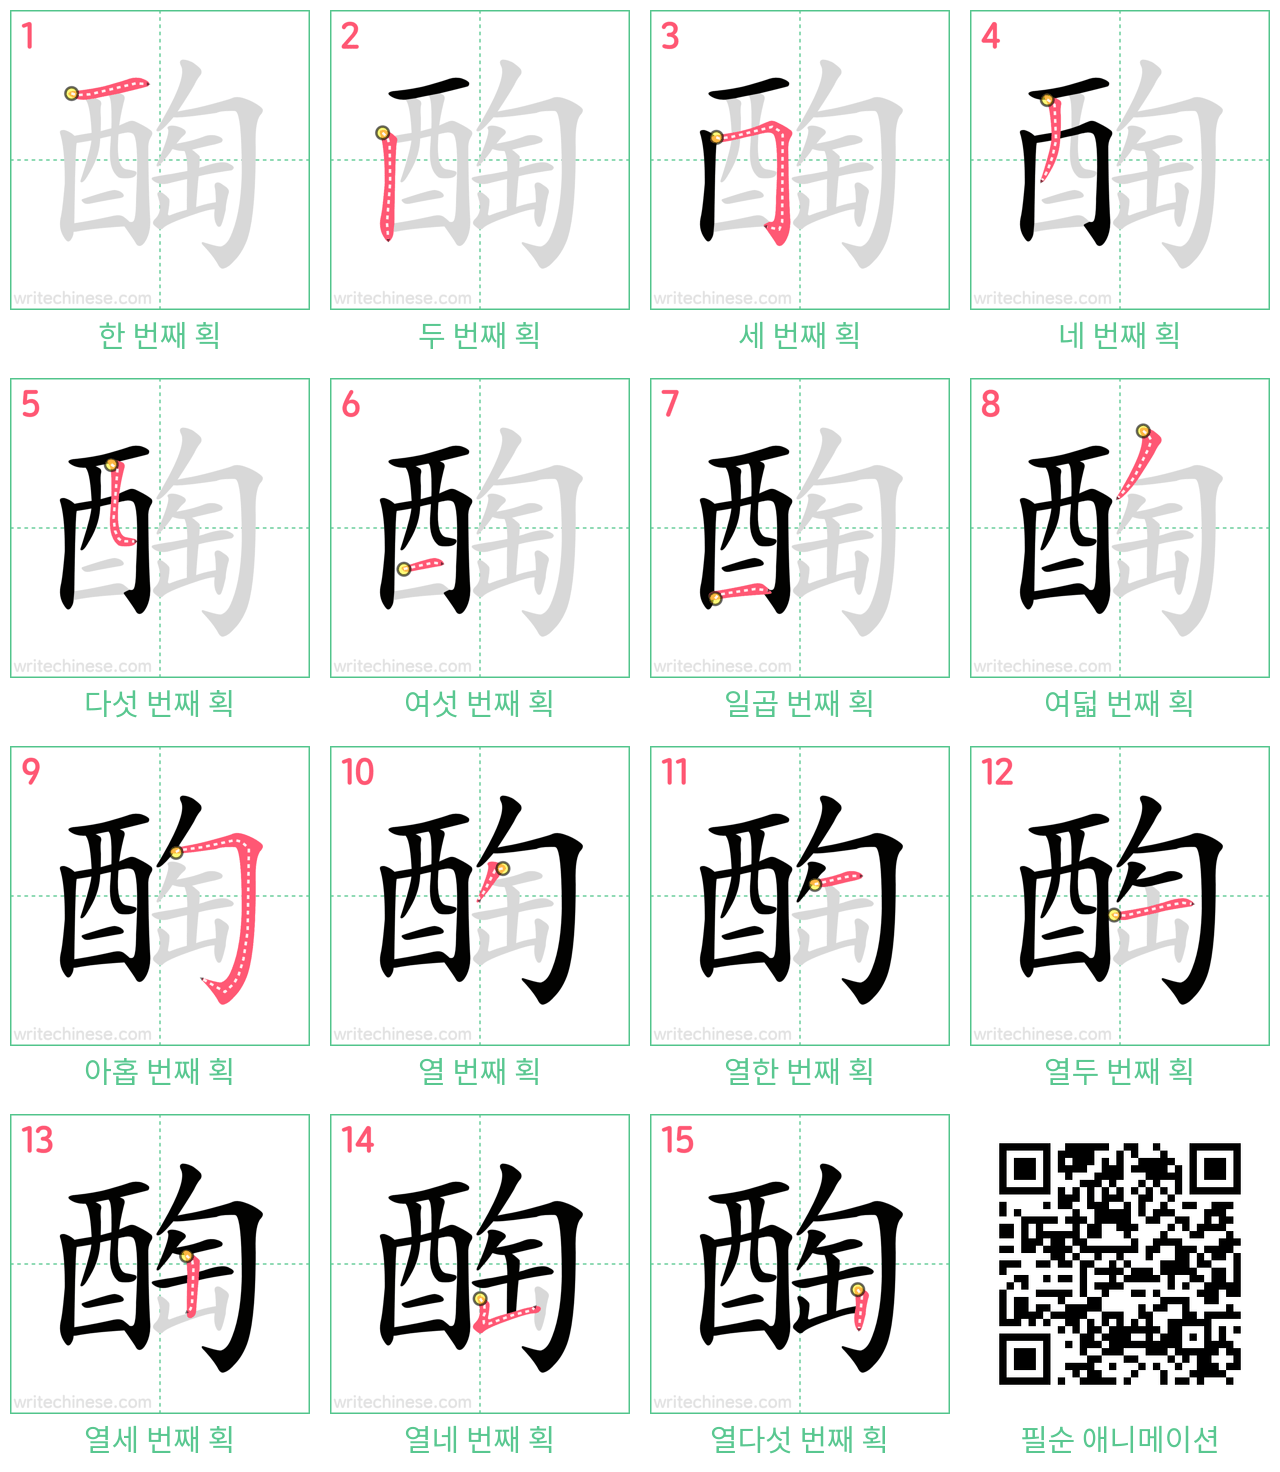 醄 step-by-step stroke order diagrams